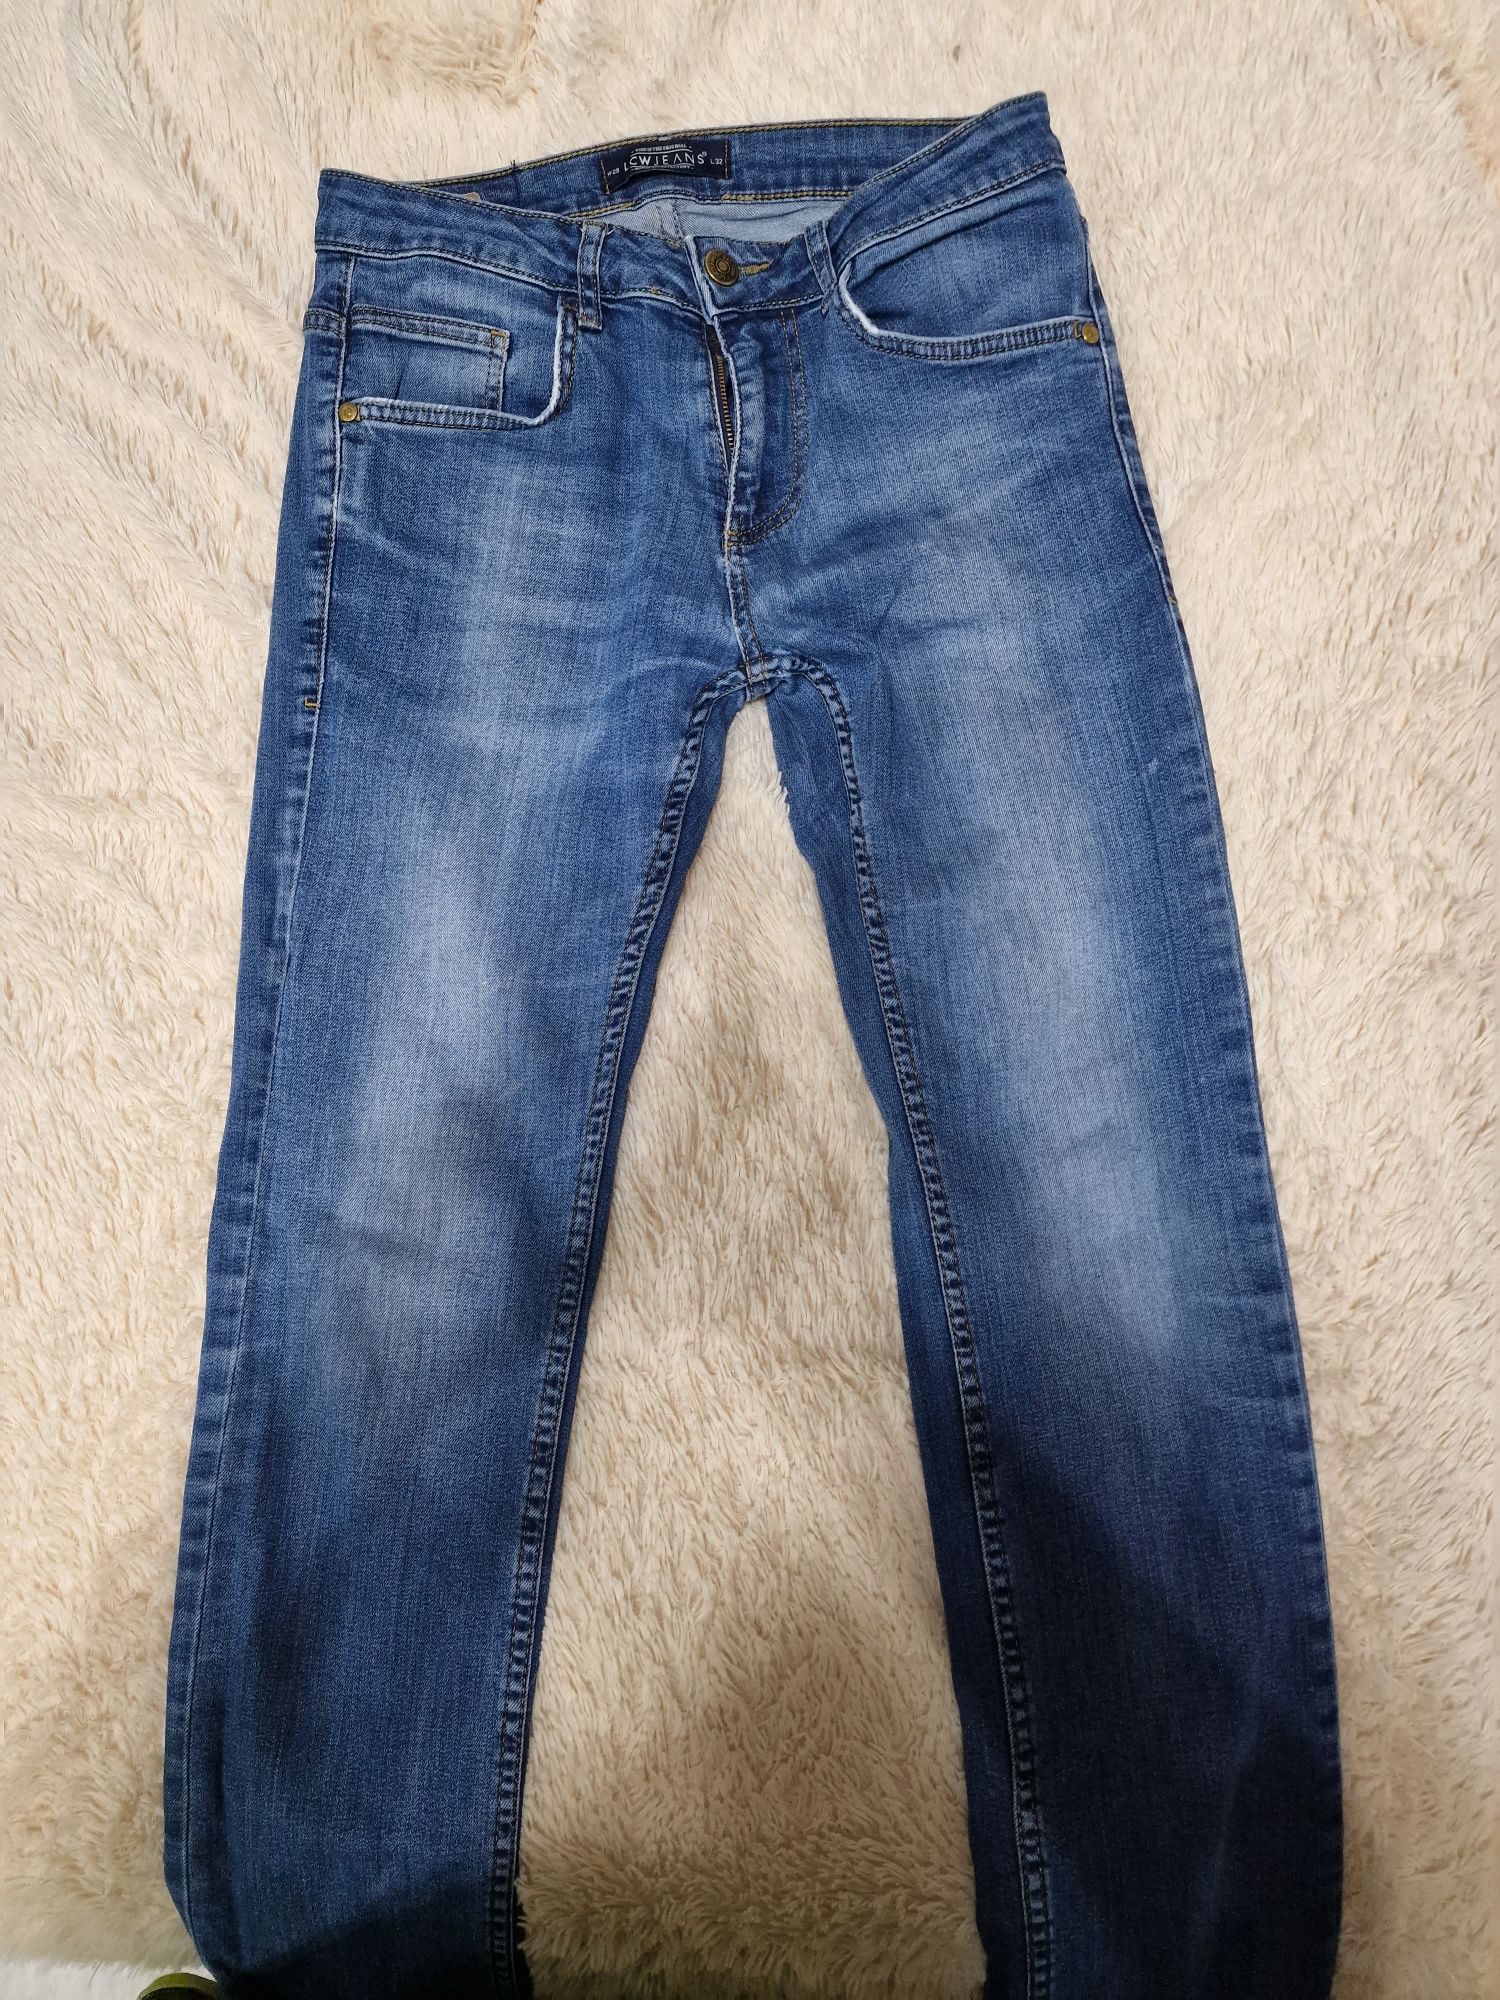 Продам мужские вещи (джинсы,поло,футболки,шорты)